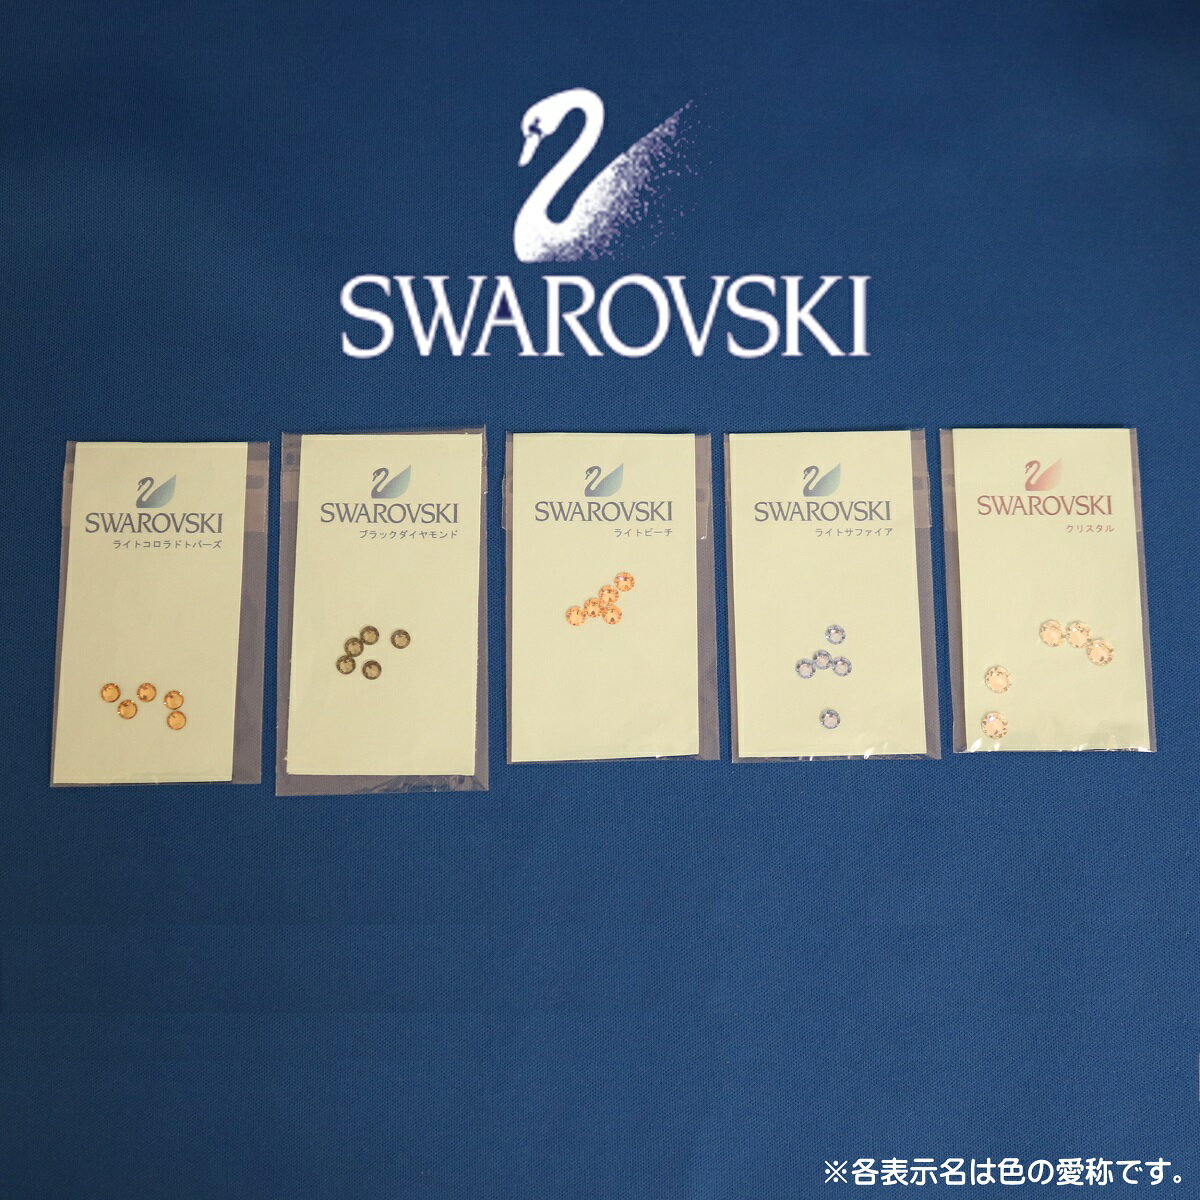 スワロフスキー 5色 各5個 セット 装飾 オカリナ メール便指定 全国